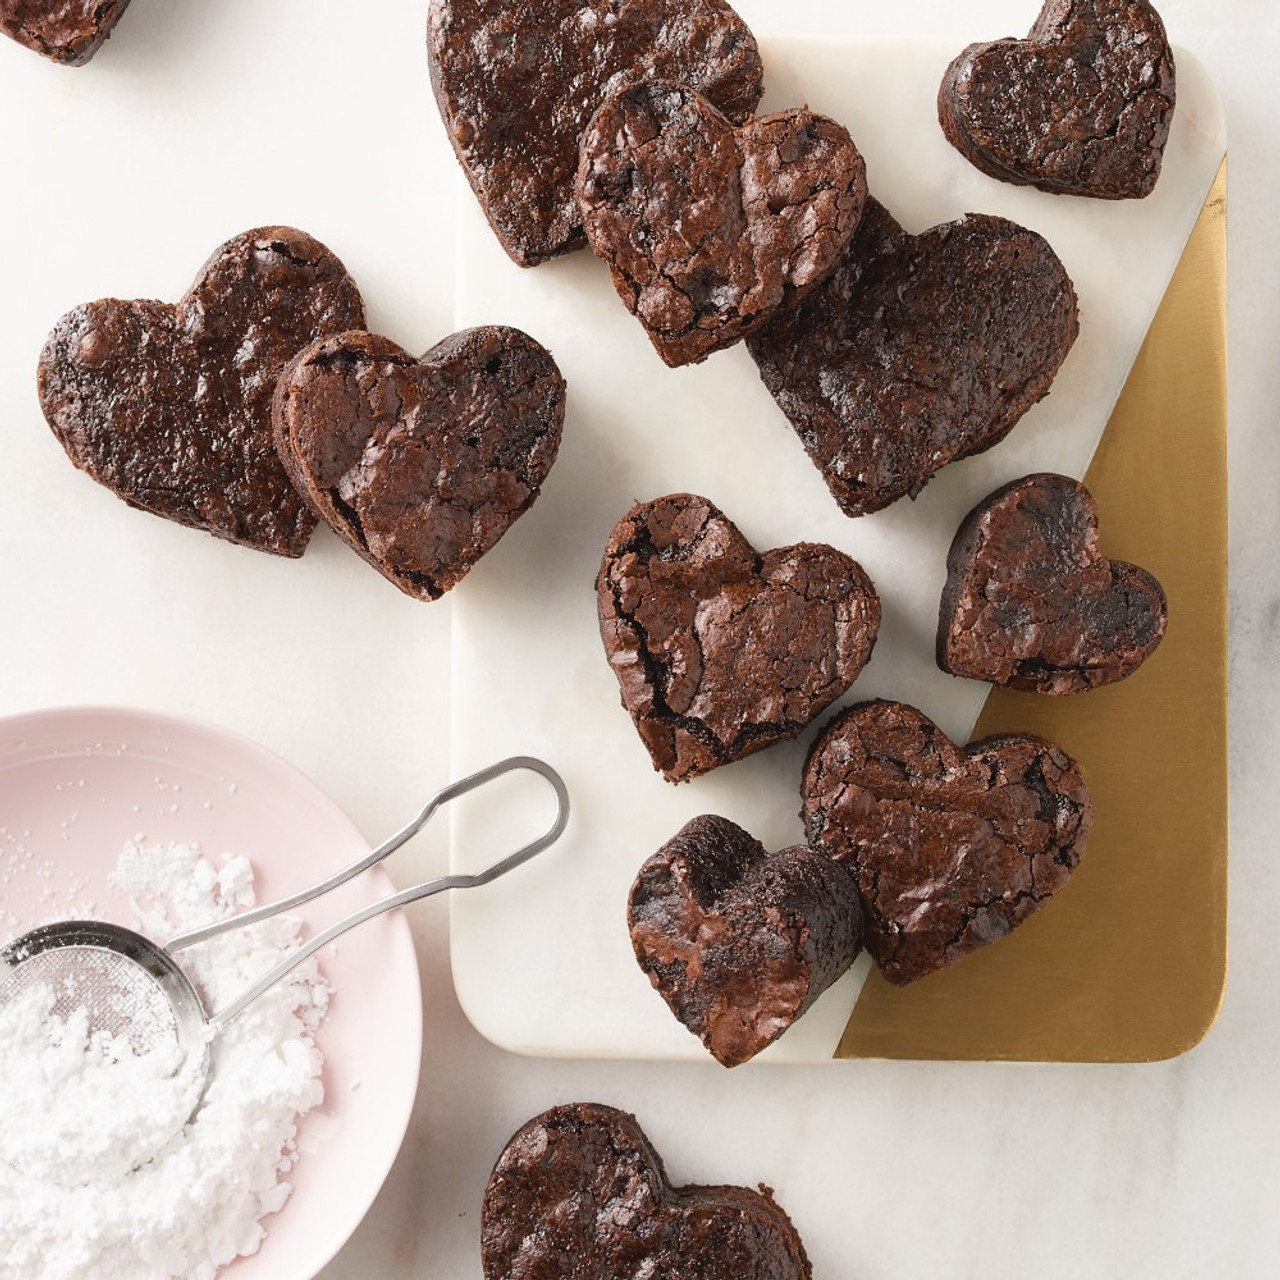 Metal Heart Cookie Cutter - bakeartstencils